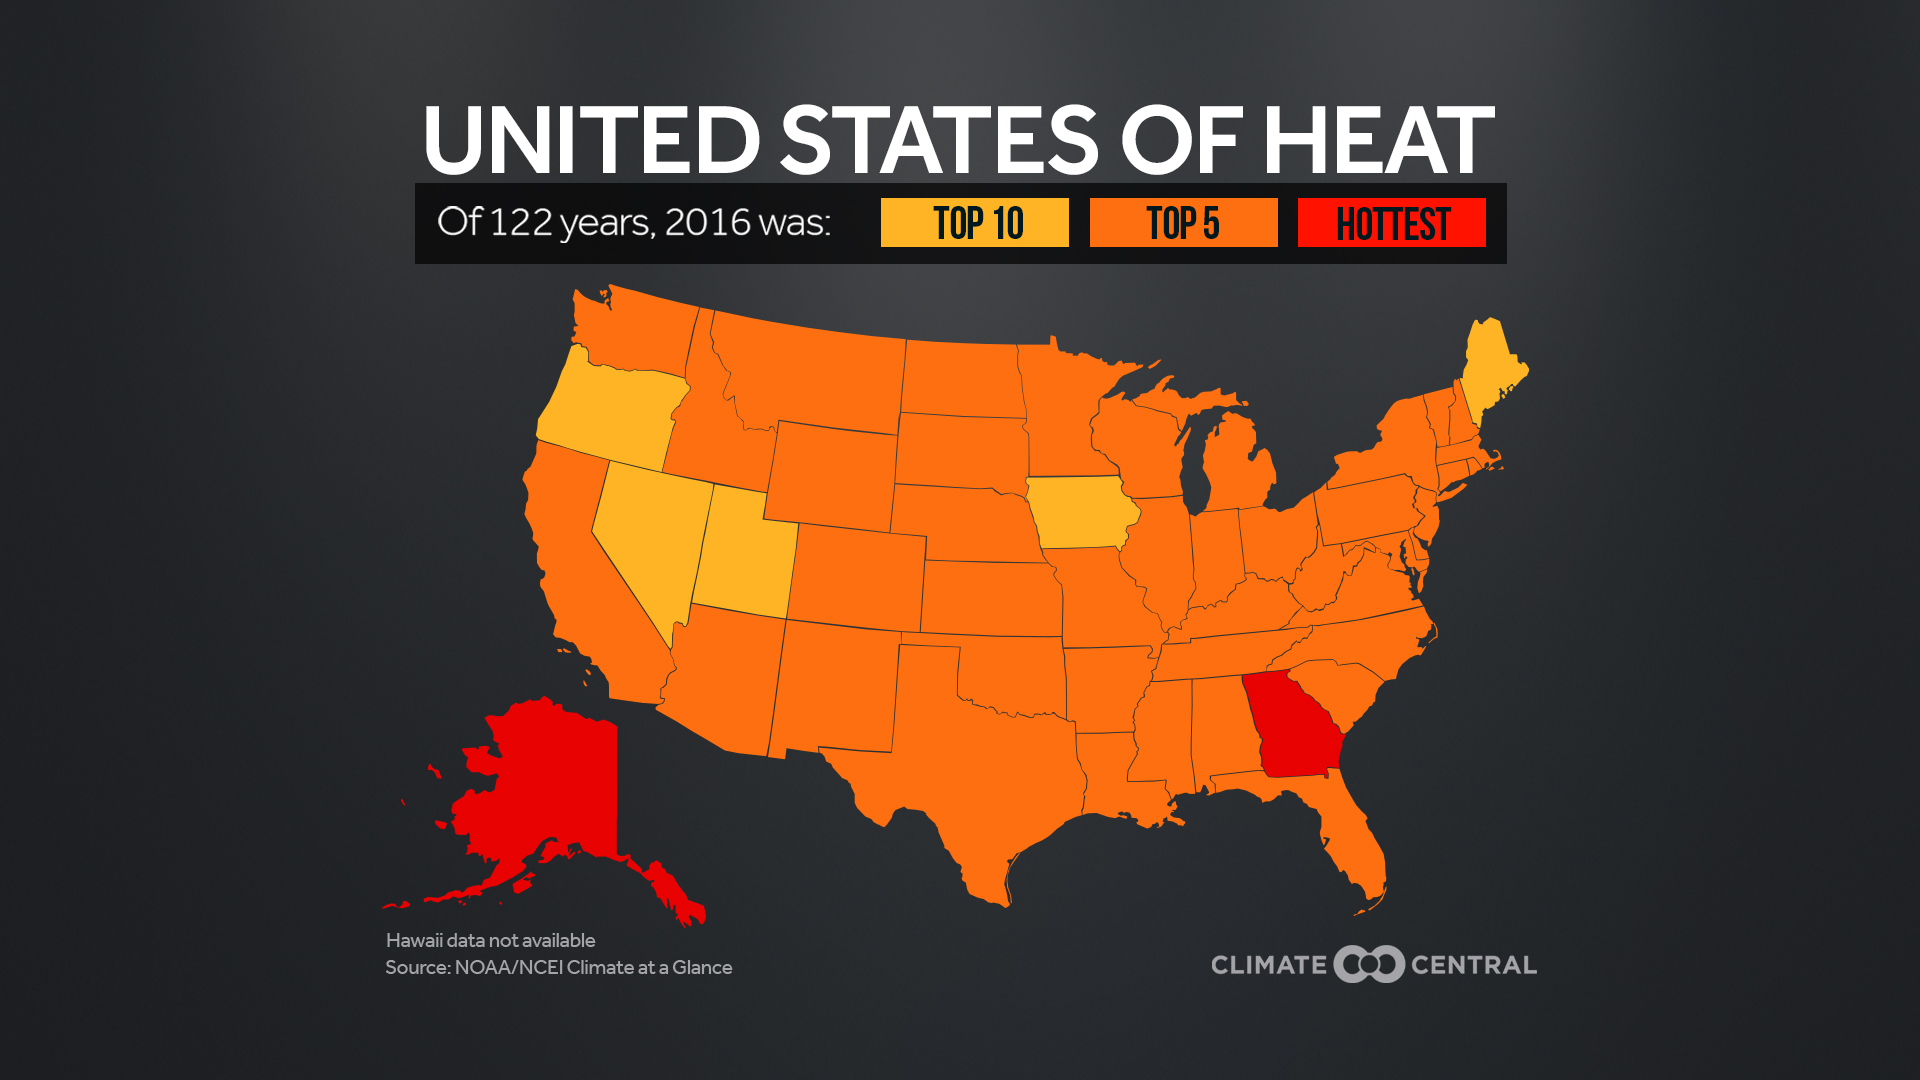 quins estats fan calor durant tot l'any